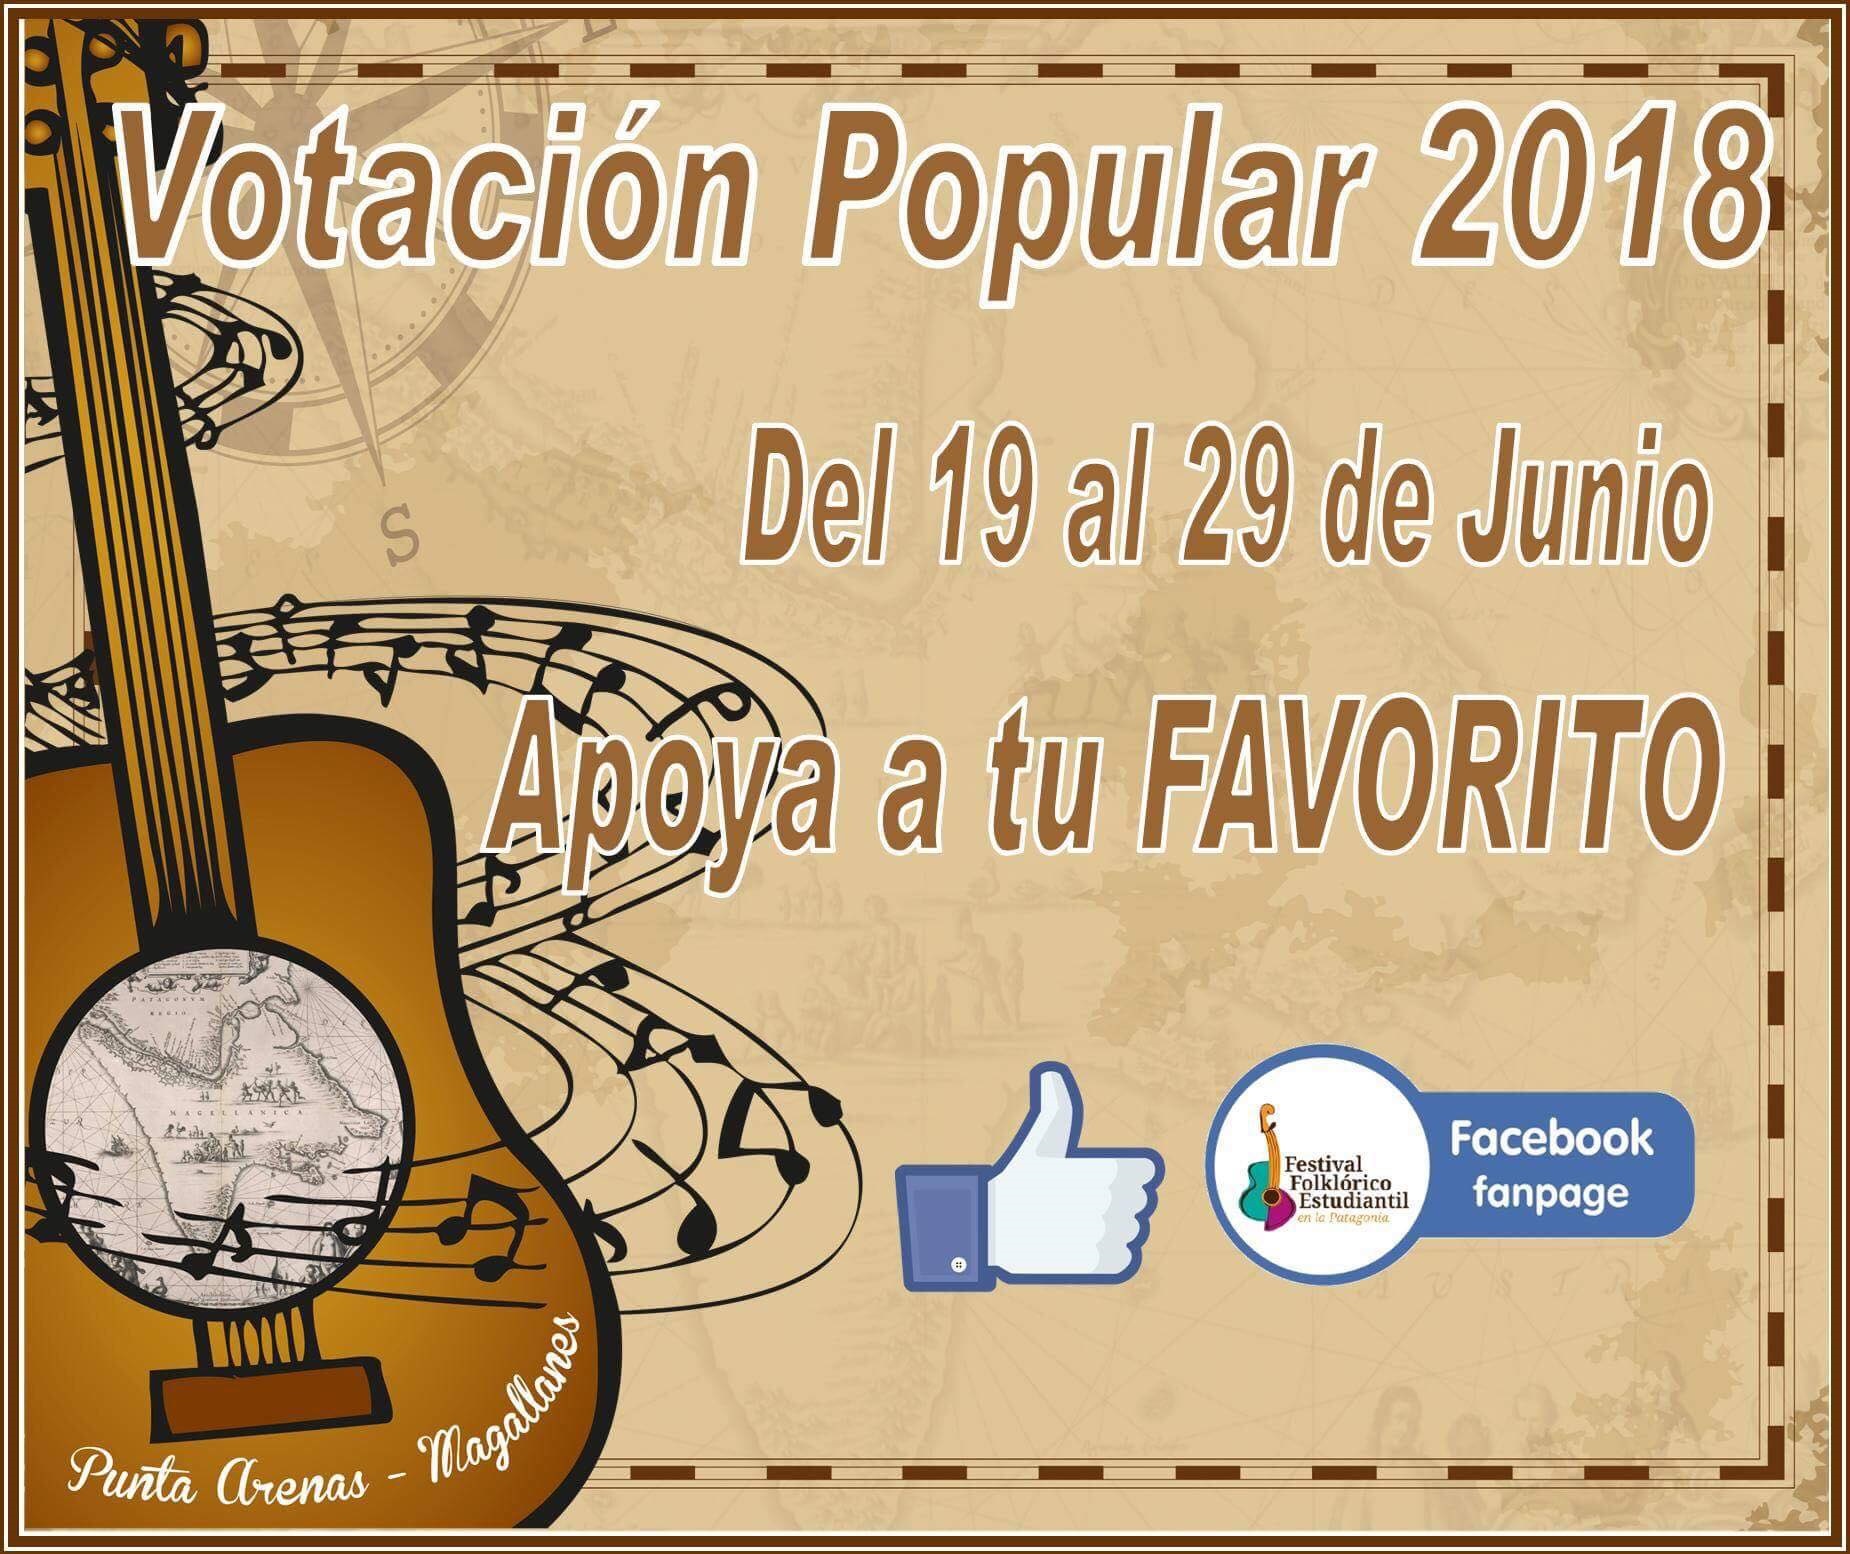 Votación popular en redes sociales para el Festival Estudiantil de la Patagonia en Punta Arenas